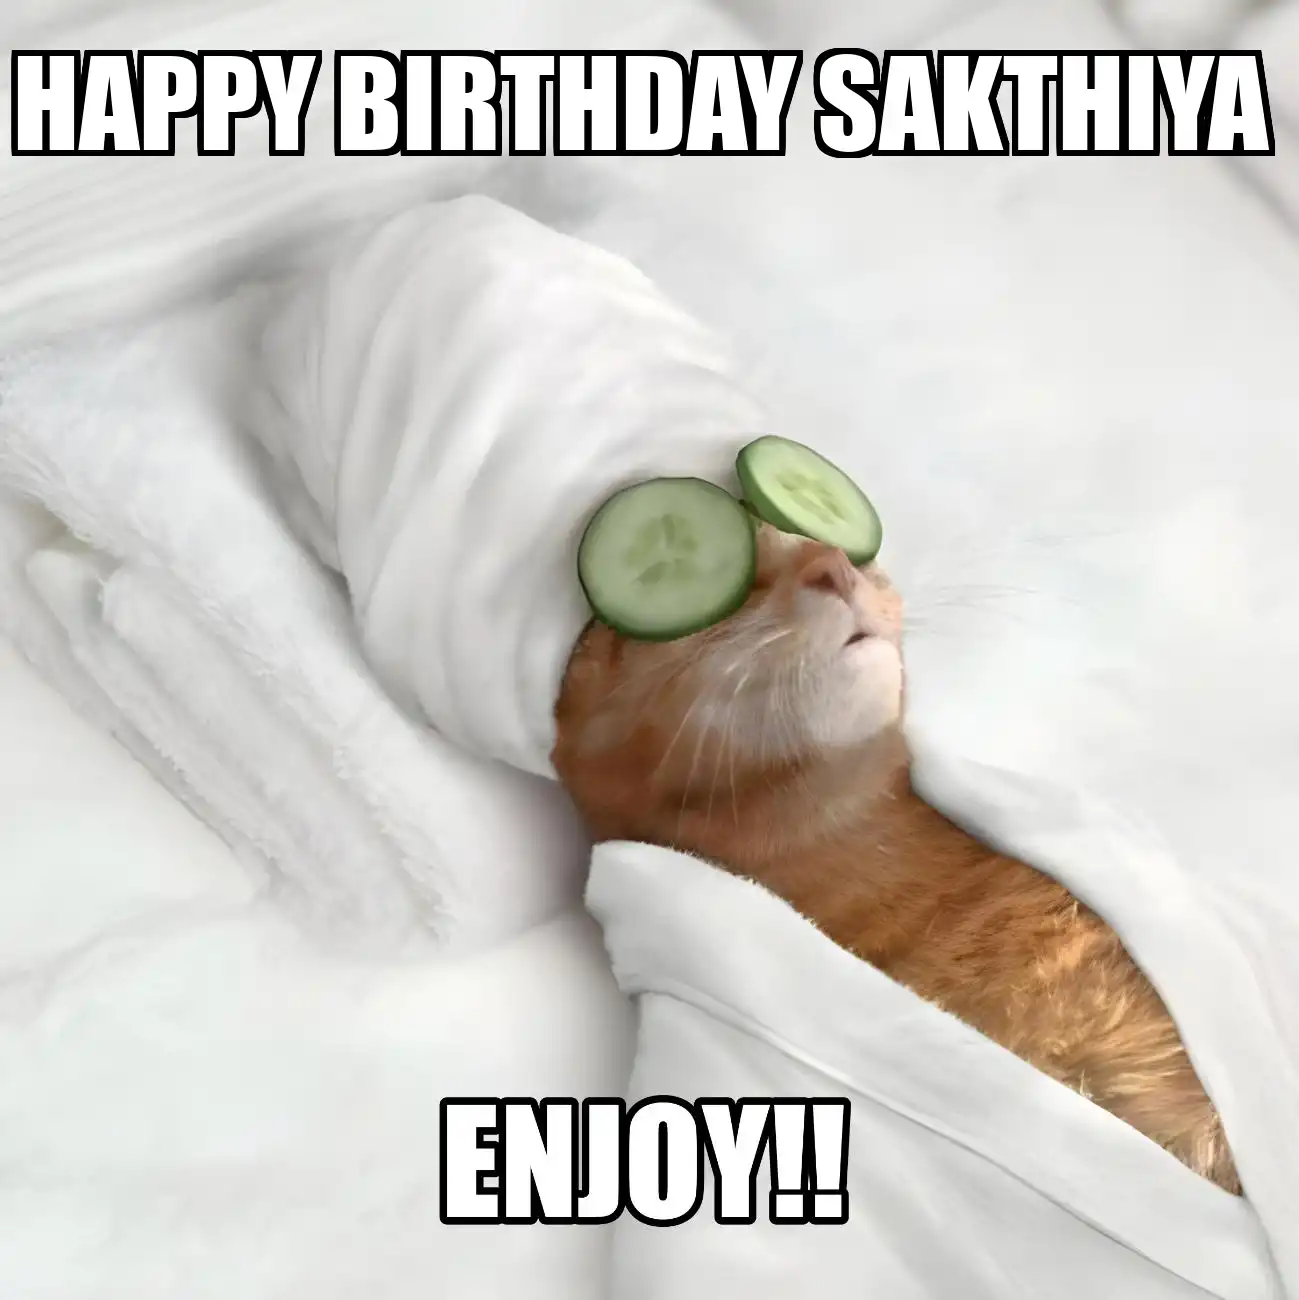 Happy Birthday Sakthiya Enjoy Cat Meme